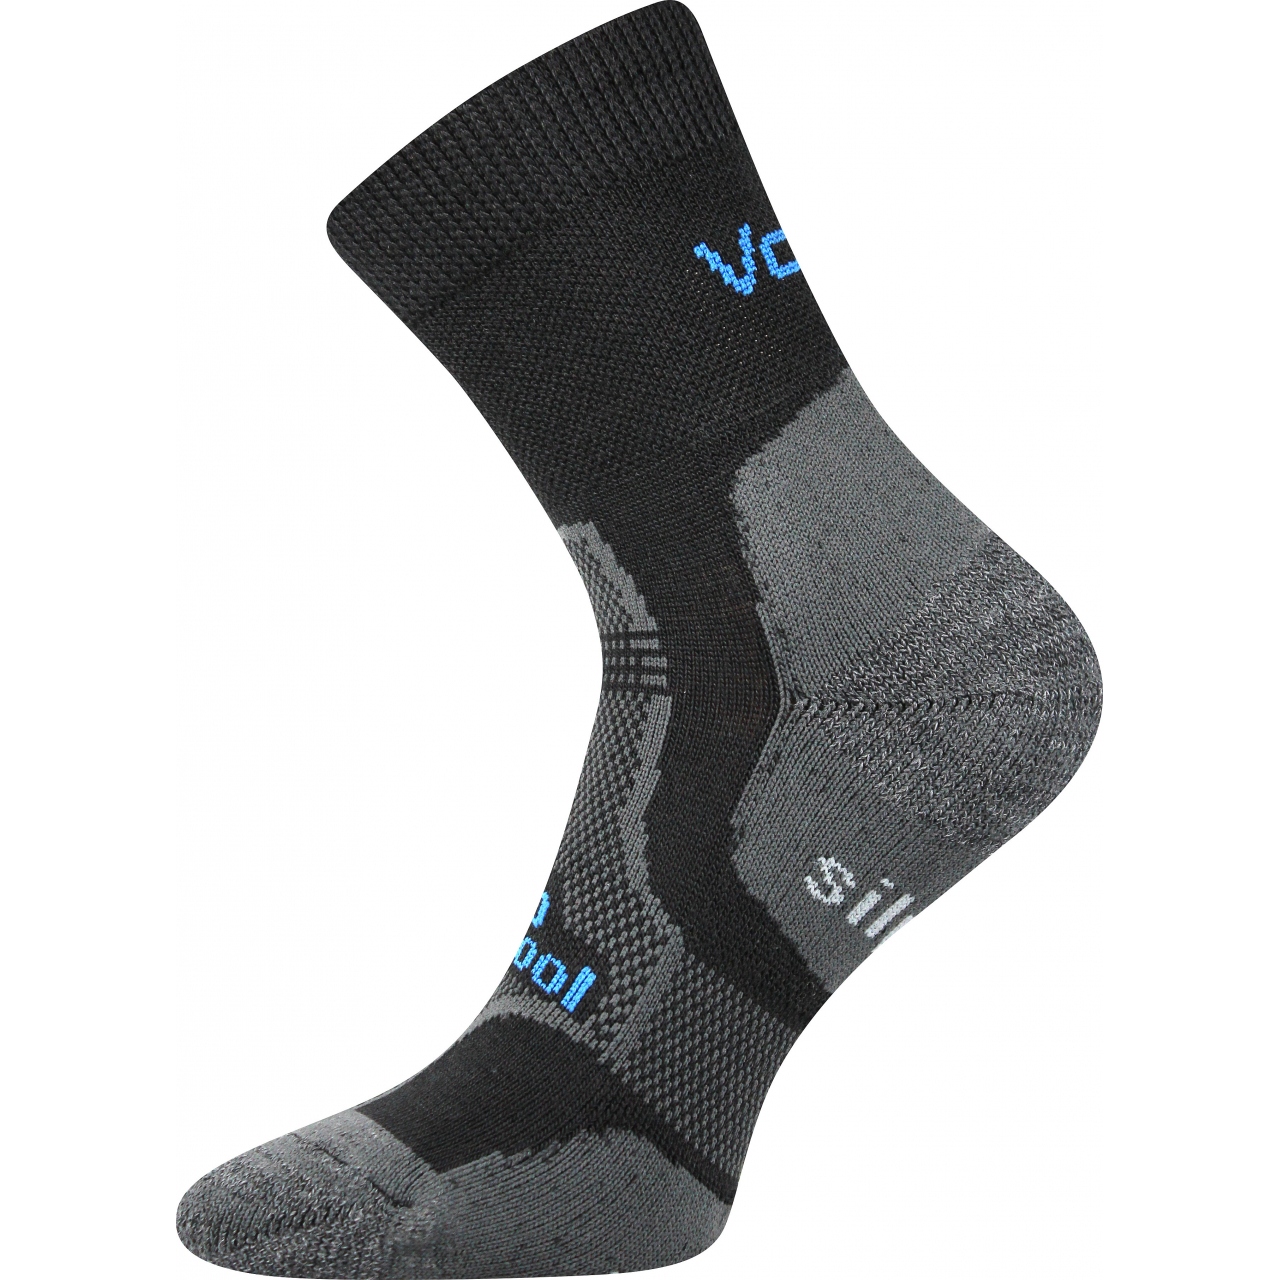 Ponožky unisex zimní Voxx Granit - černé, 35-38